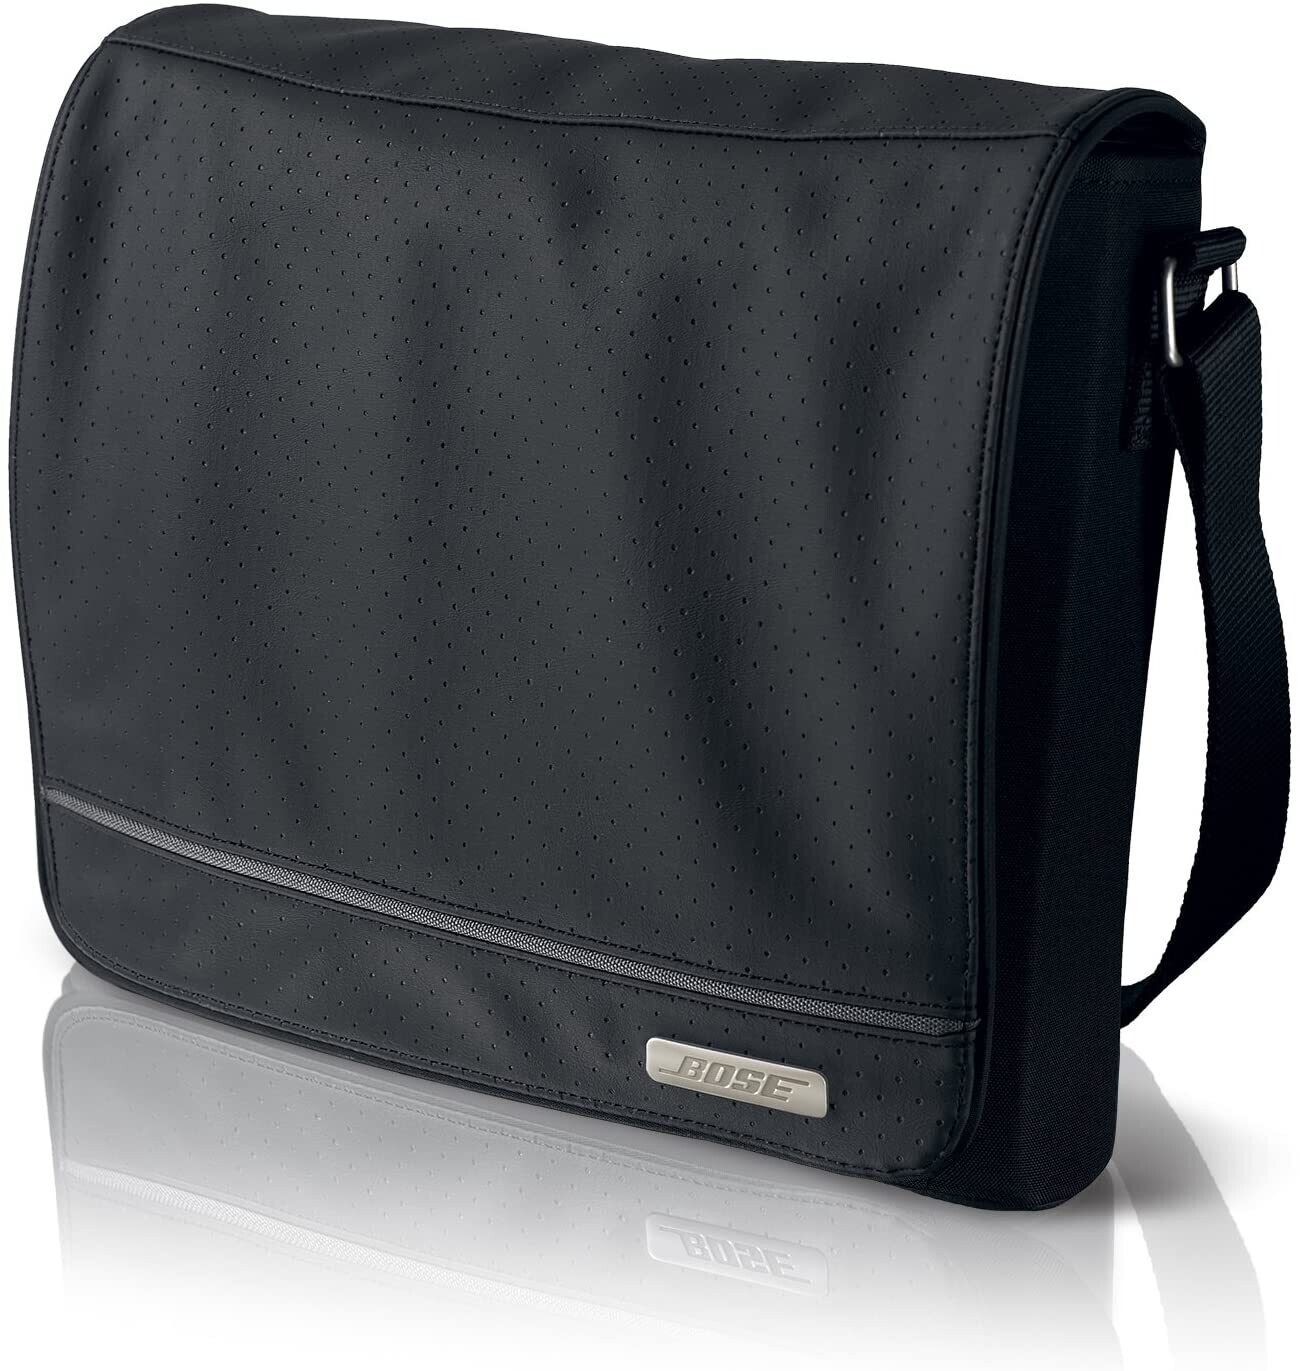 Bose travel bag for SoundDock Portable